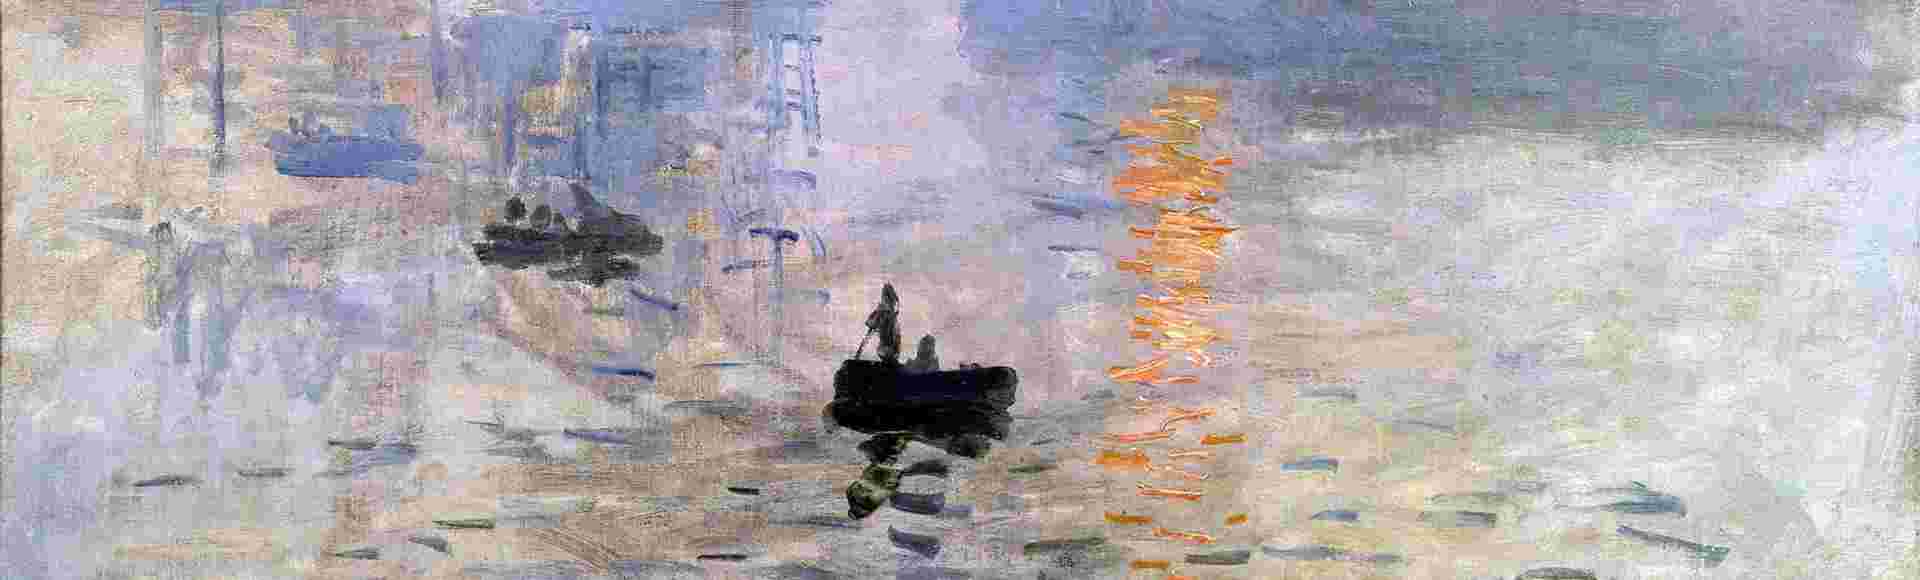 Soleil Levant by Claude Monet (1840-1926).